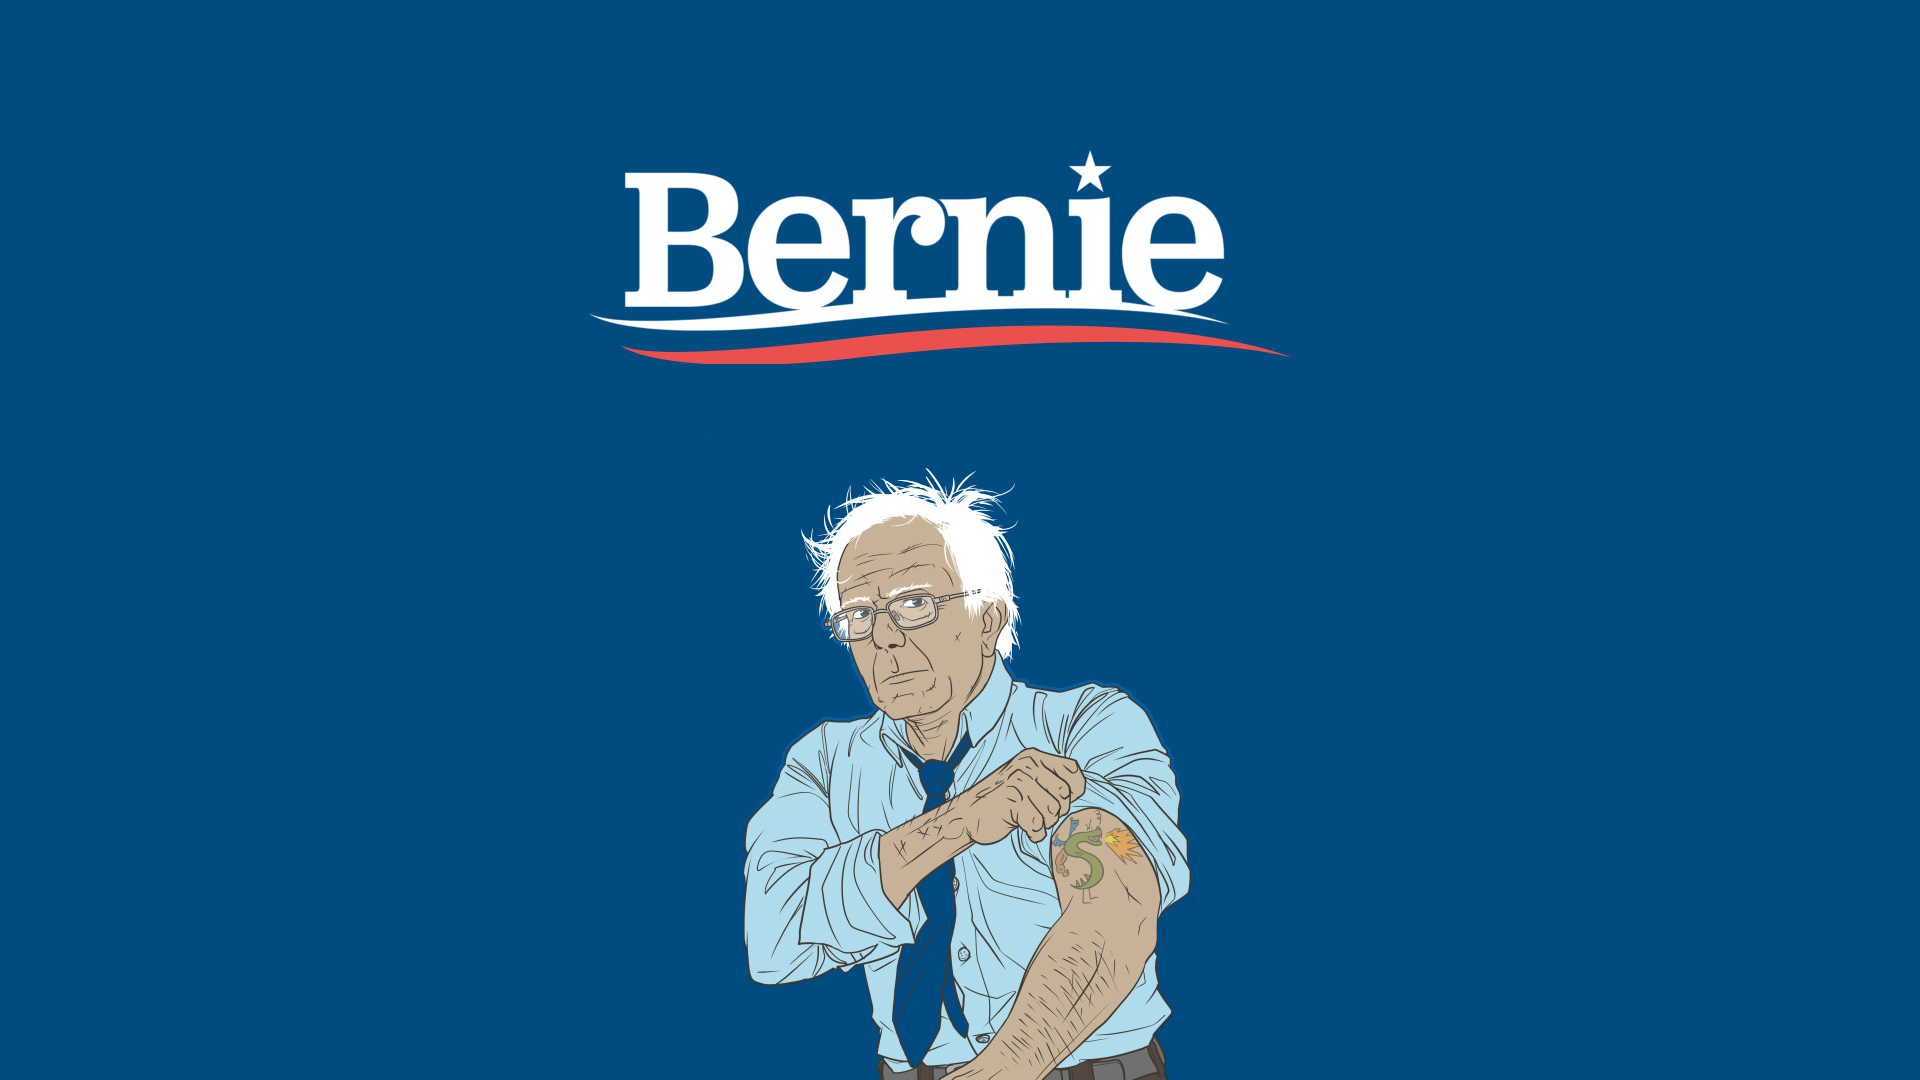 Best Bernie Wallpaper Sanders